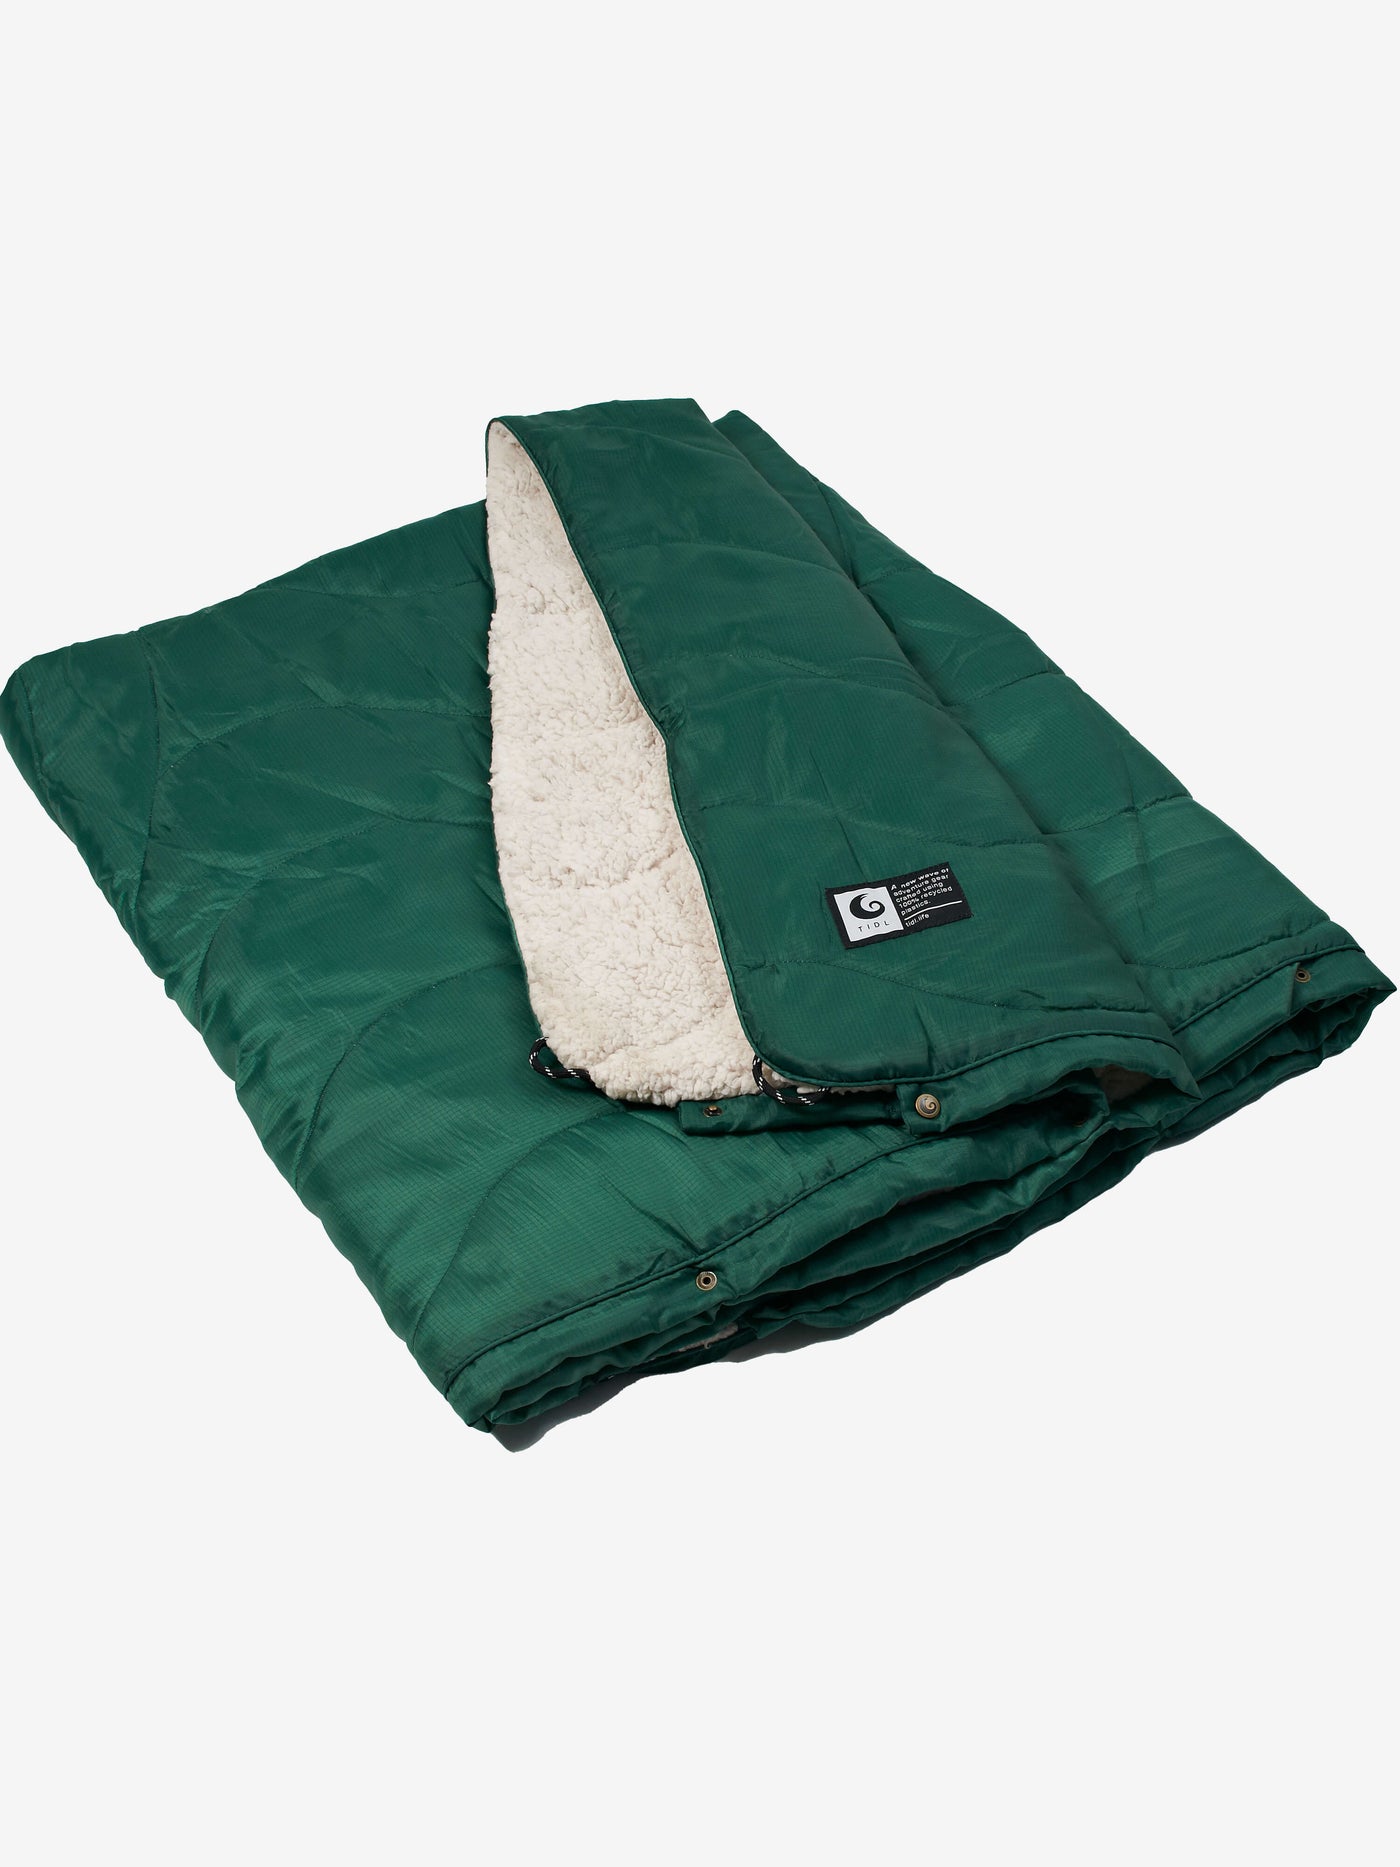 TIDL Snug Outdoor Blanket